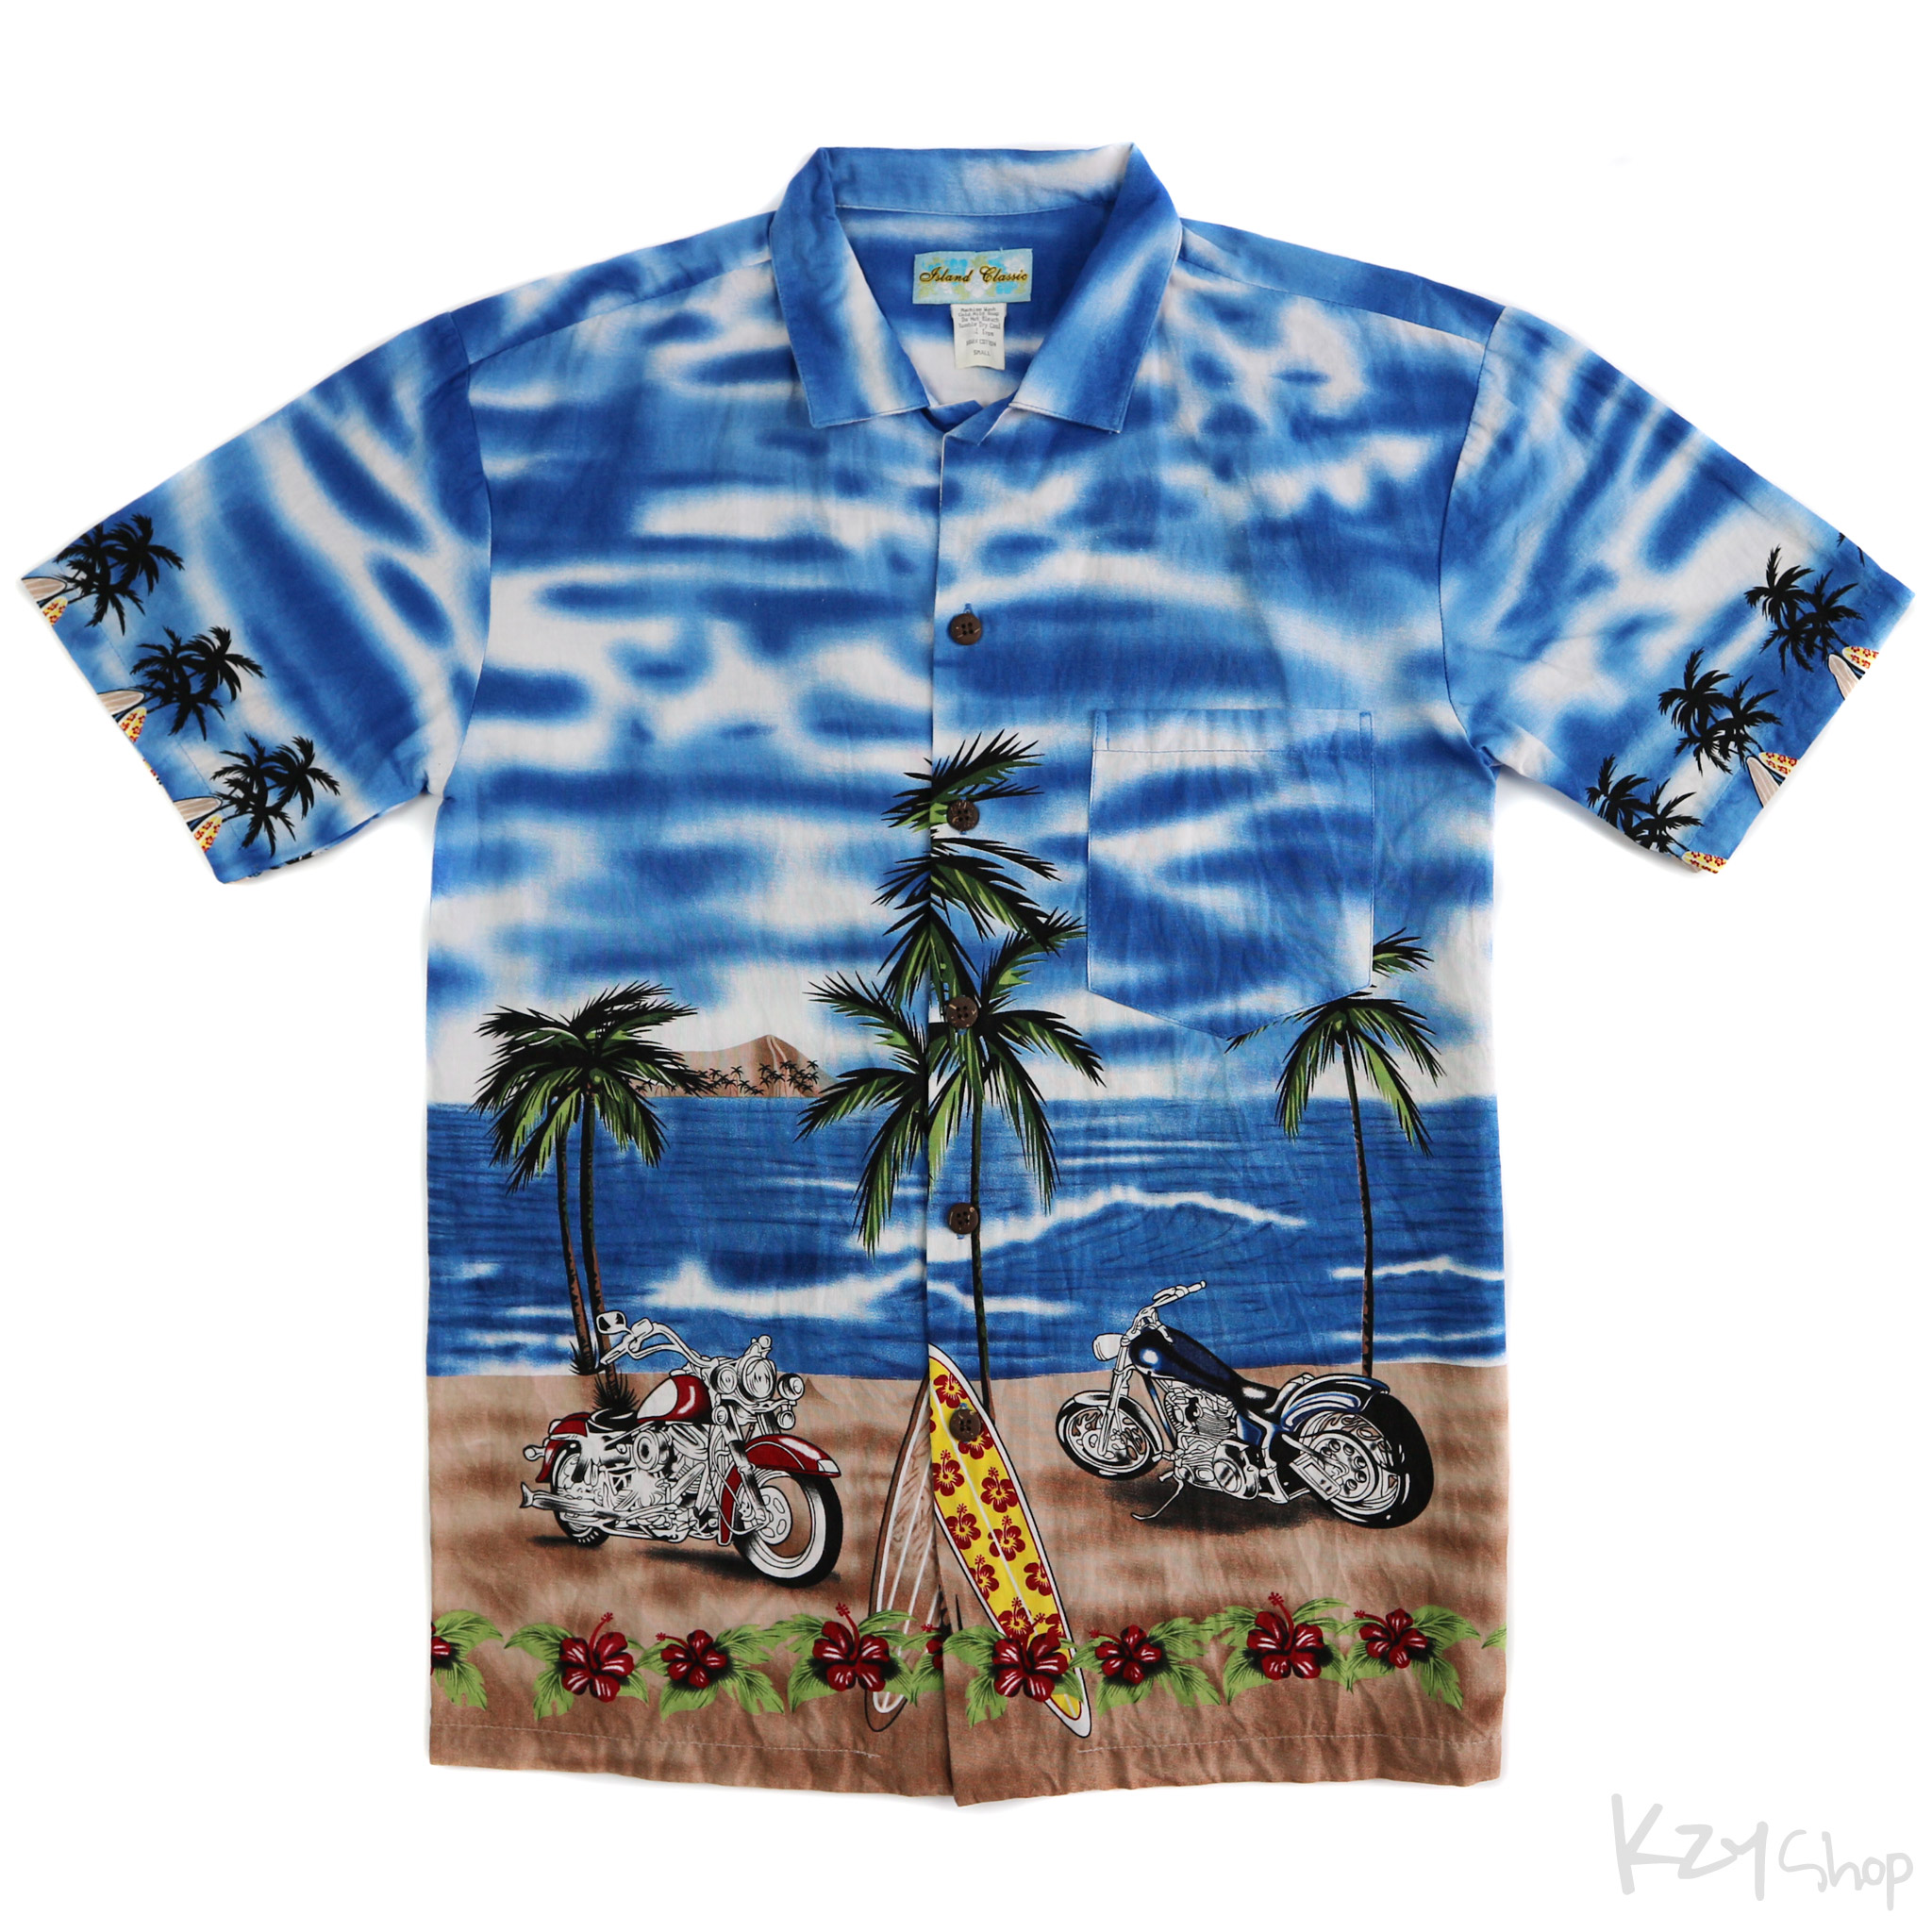 เสื้อฮาวาย Island Classic ลาย มอเตอร์ไซค์ กระดานโต้คลื่น